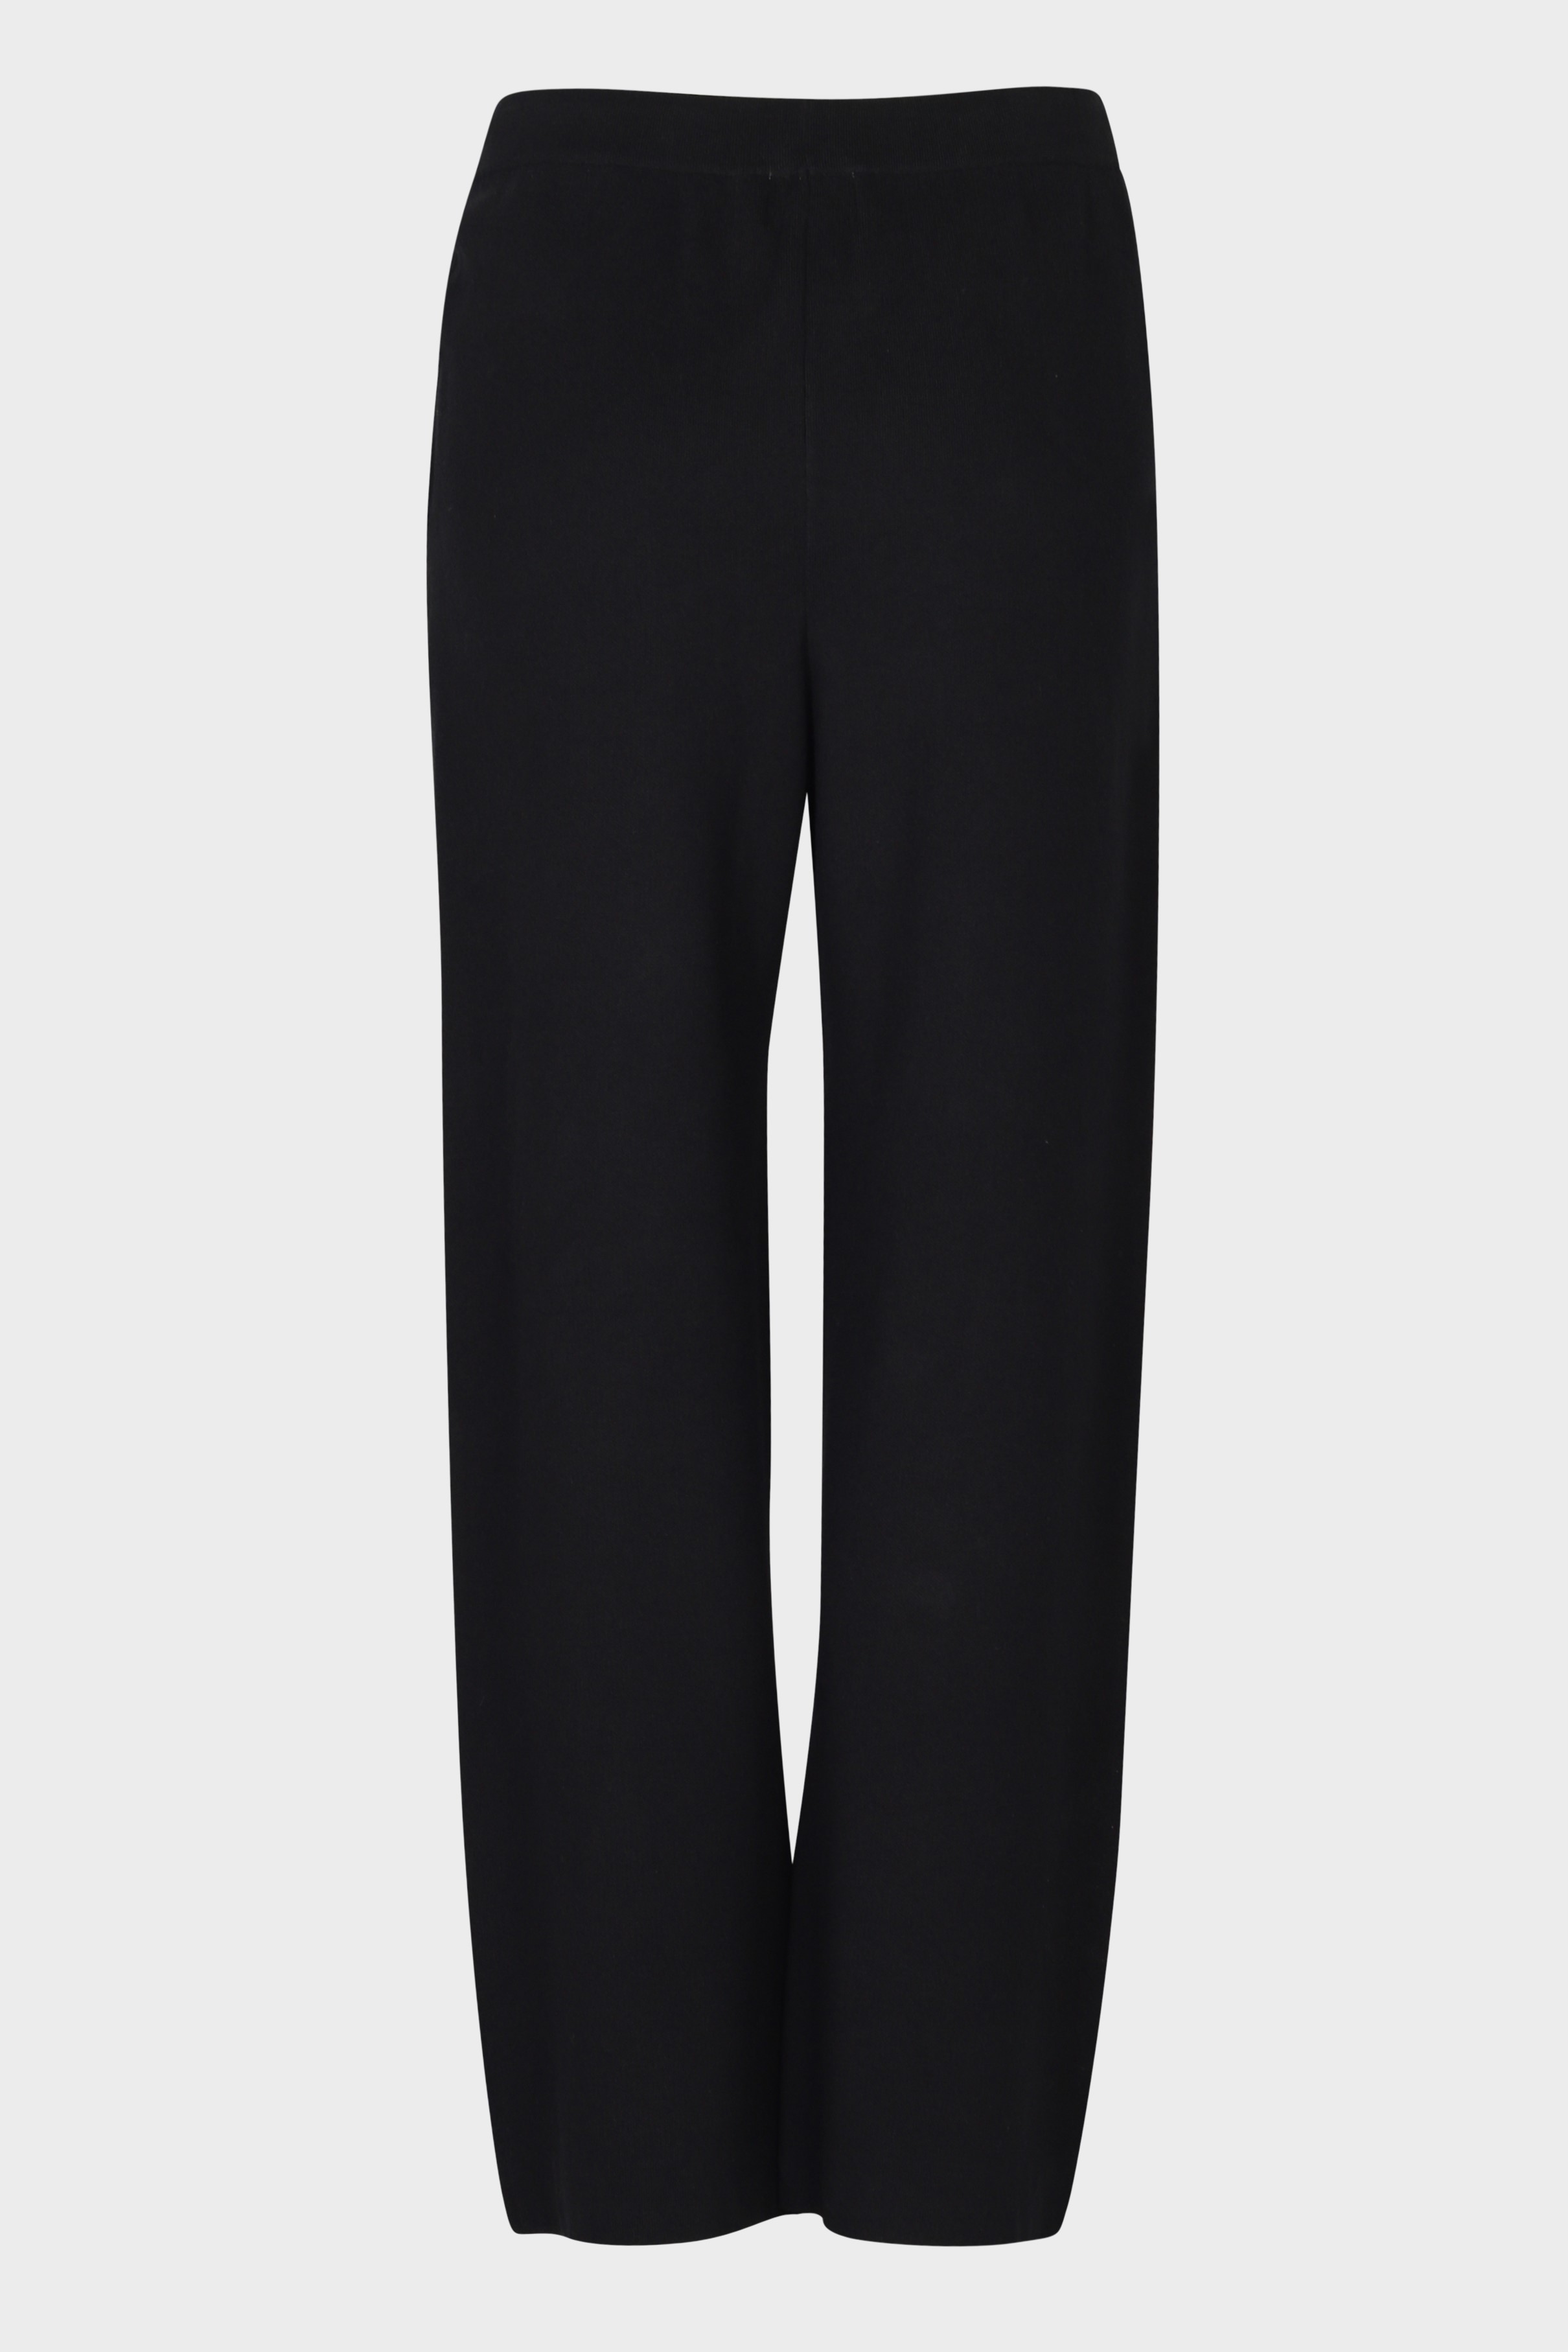 FLONA Cotton/ Cashmere Knit Pant in Black M